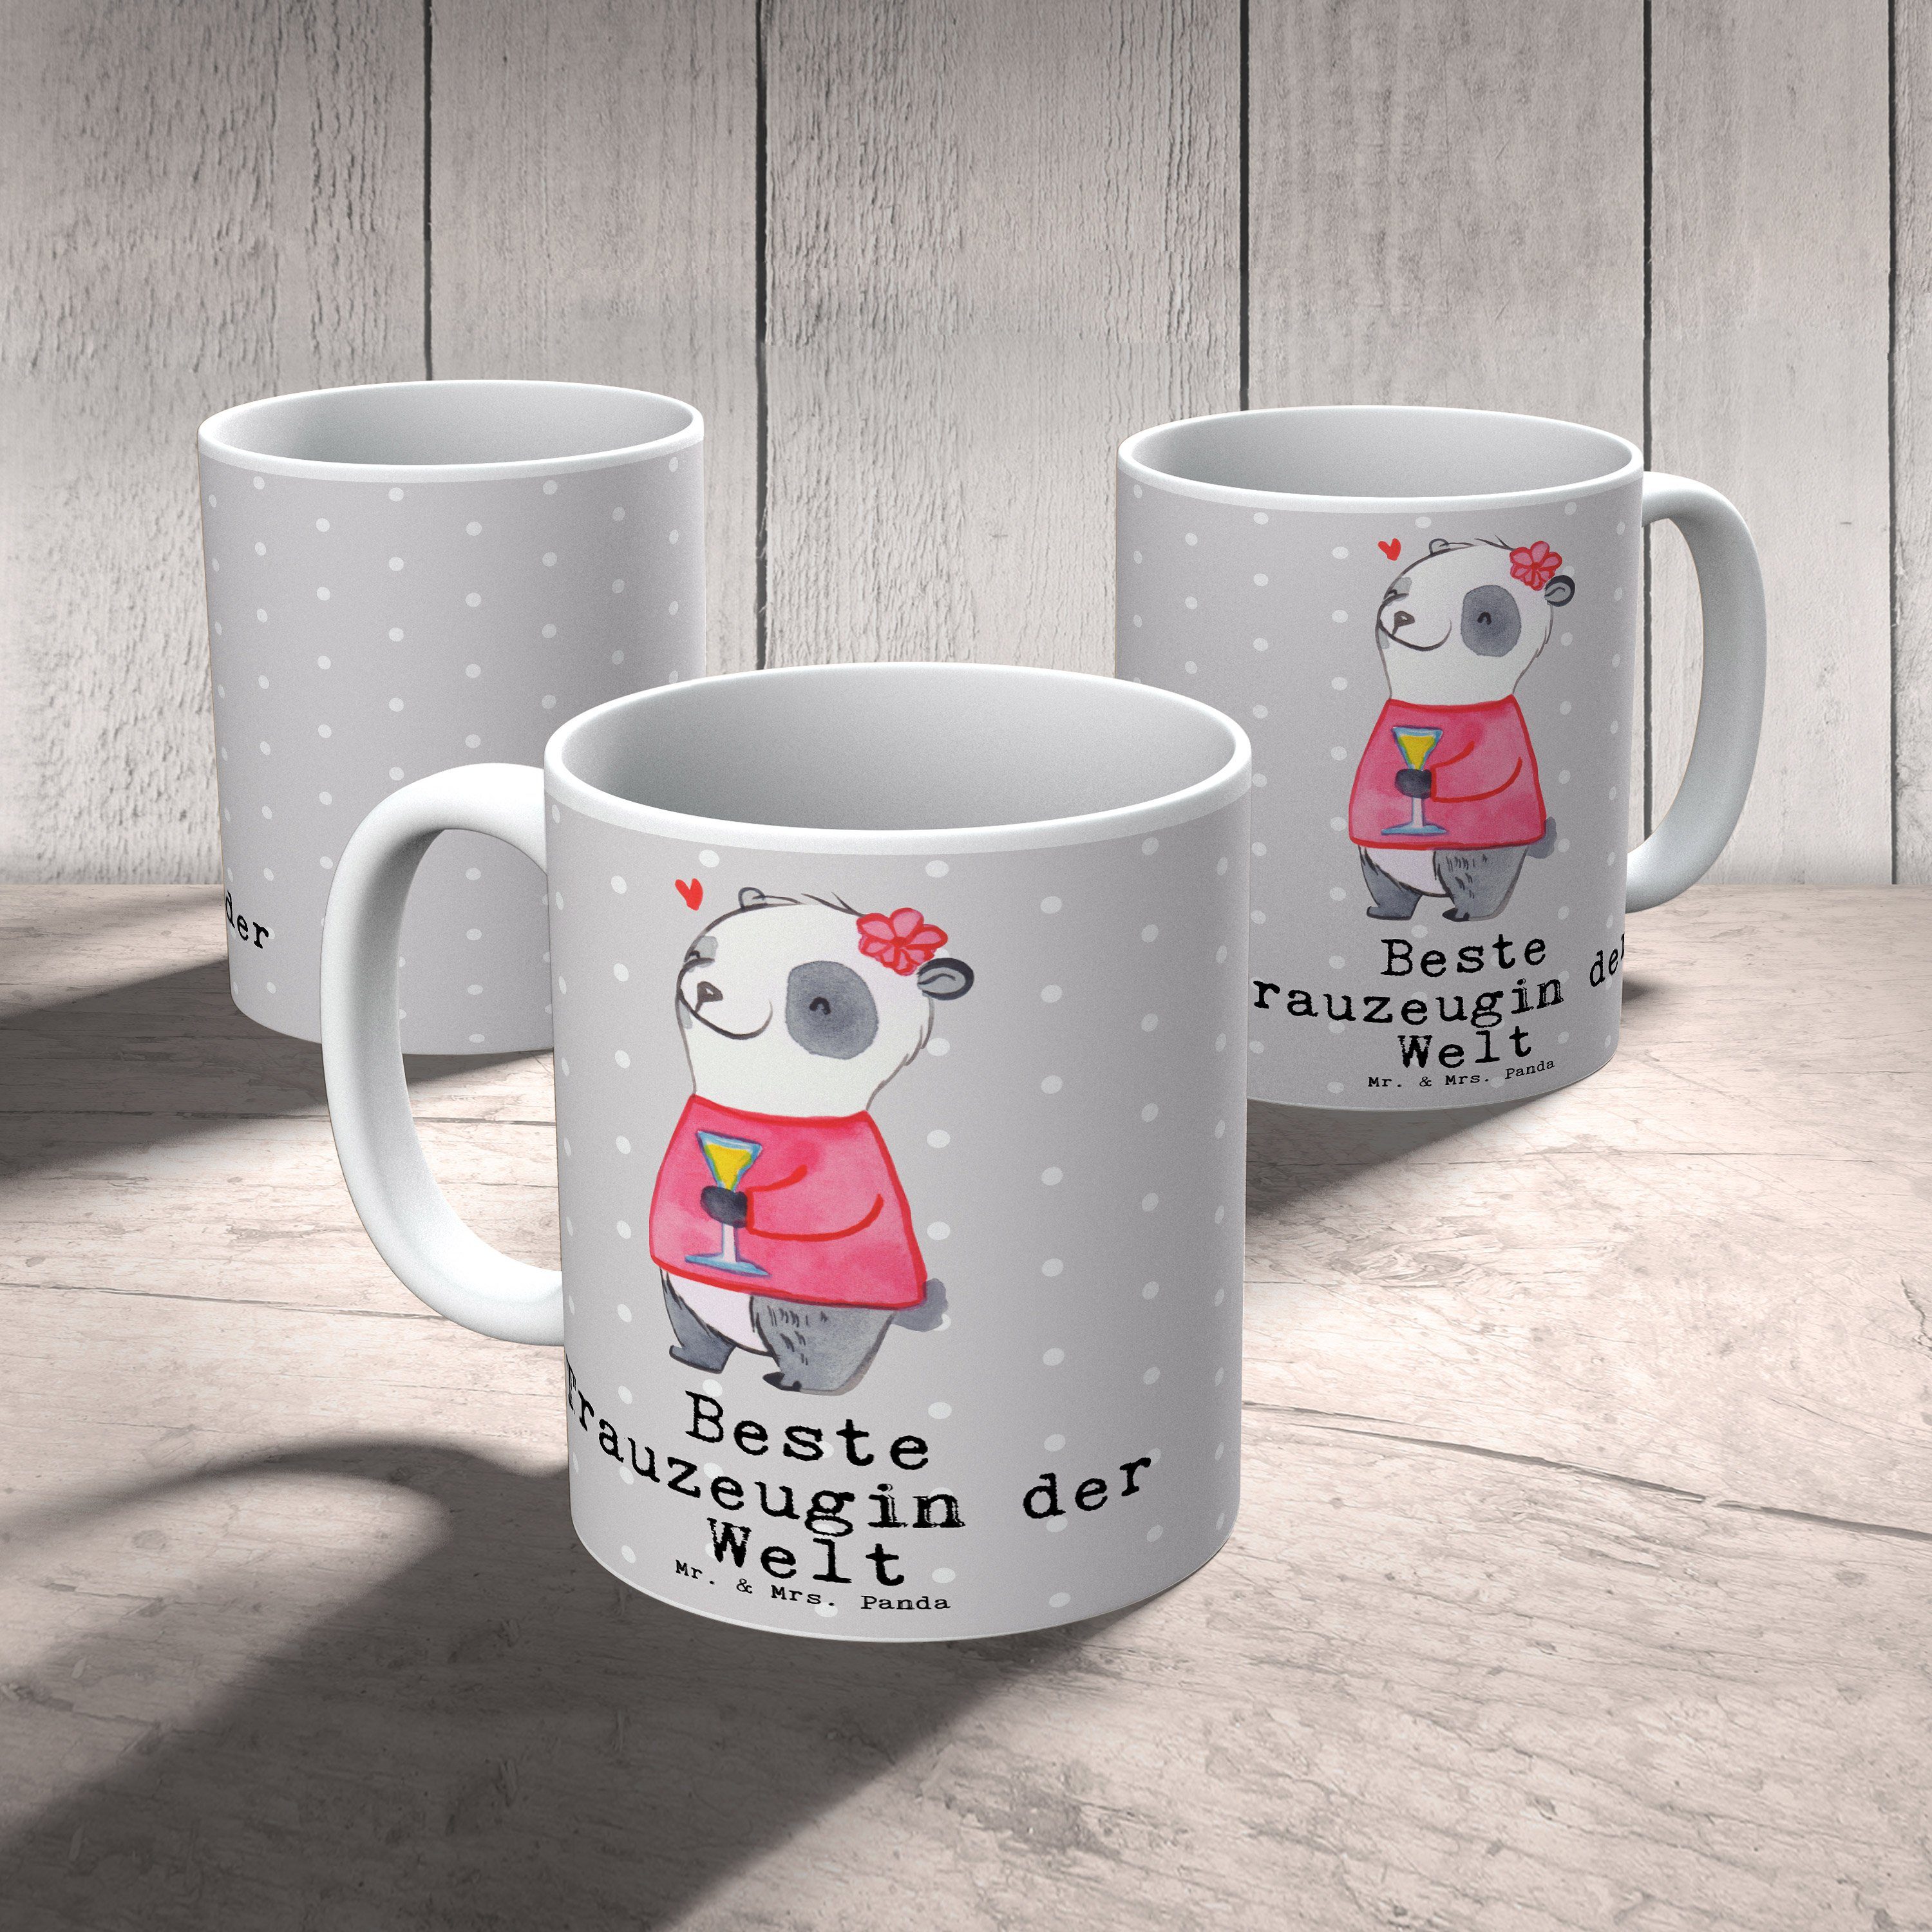 Panda & Welt - Pastell Grau Geburtstag, Trauzeugin - der Mrs. Beste Keramik Mr. Panda Geschenk, Tasse